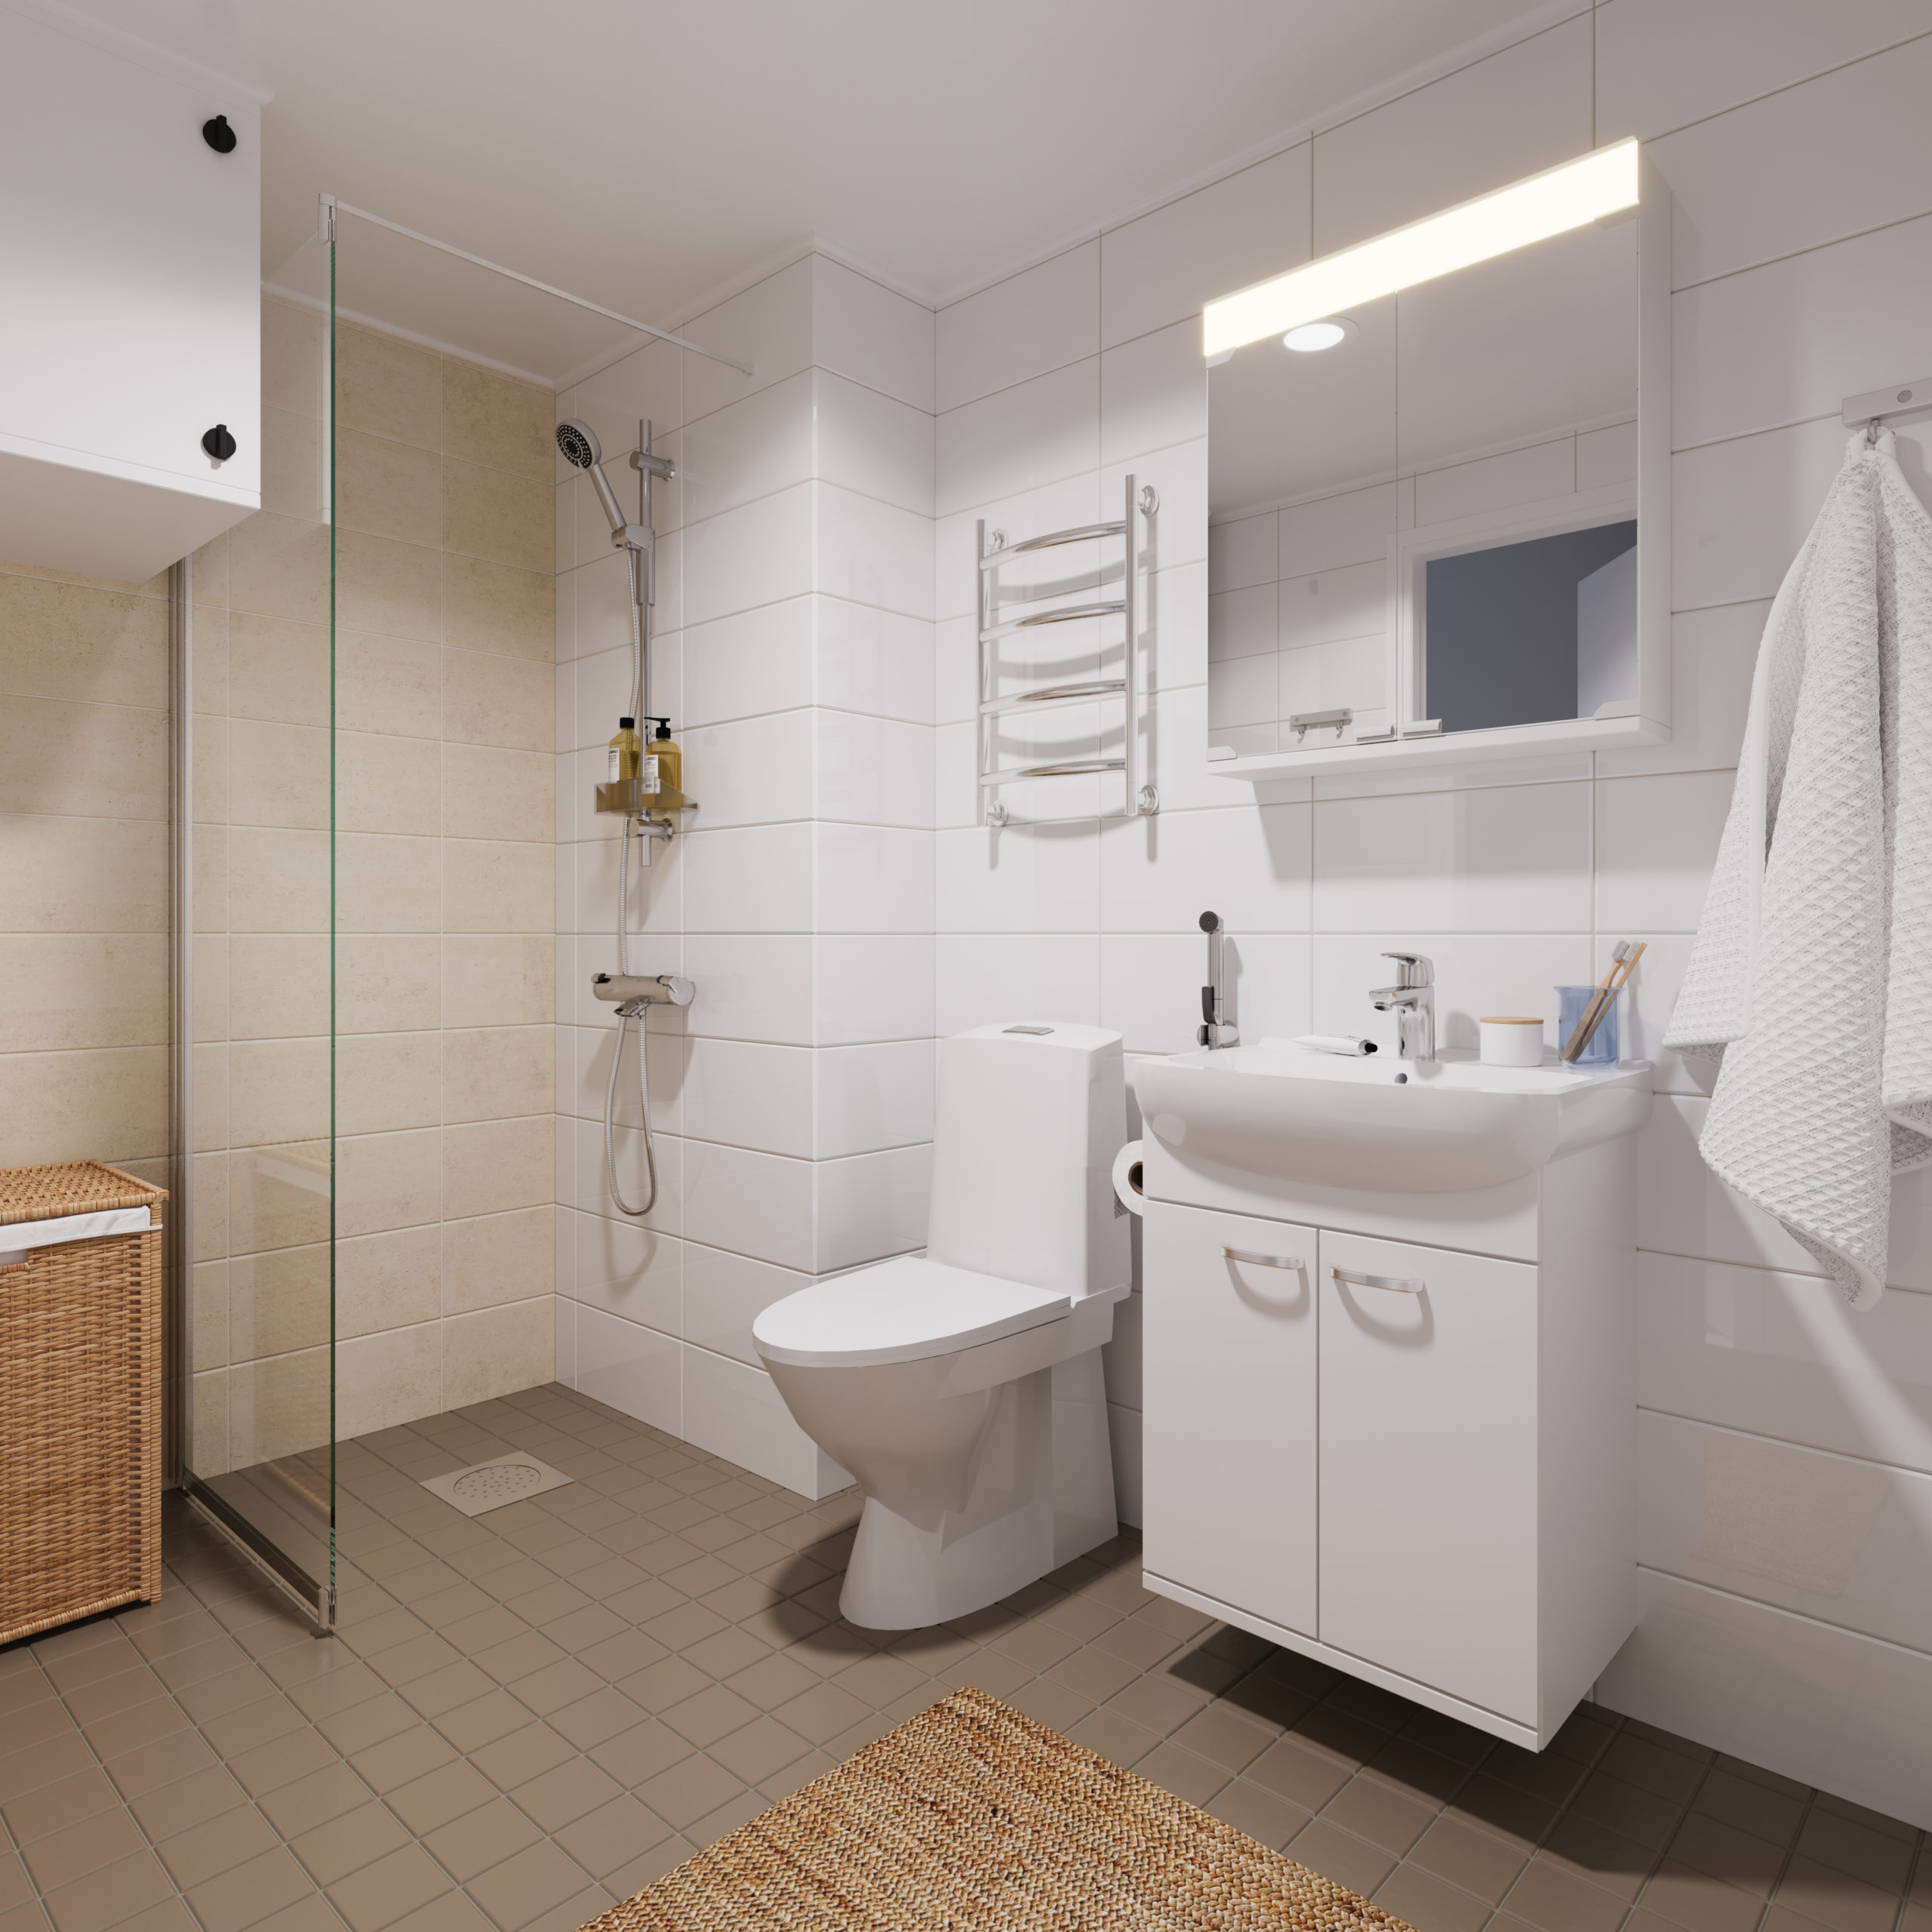 Metsolankadun kodin kylpyhuone näkymä. Kylpyhuoneessa on vaaleat kalusteet, beige lattia ja vaaleat seinät.